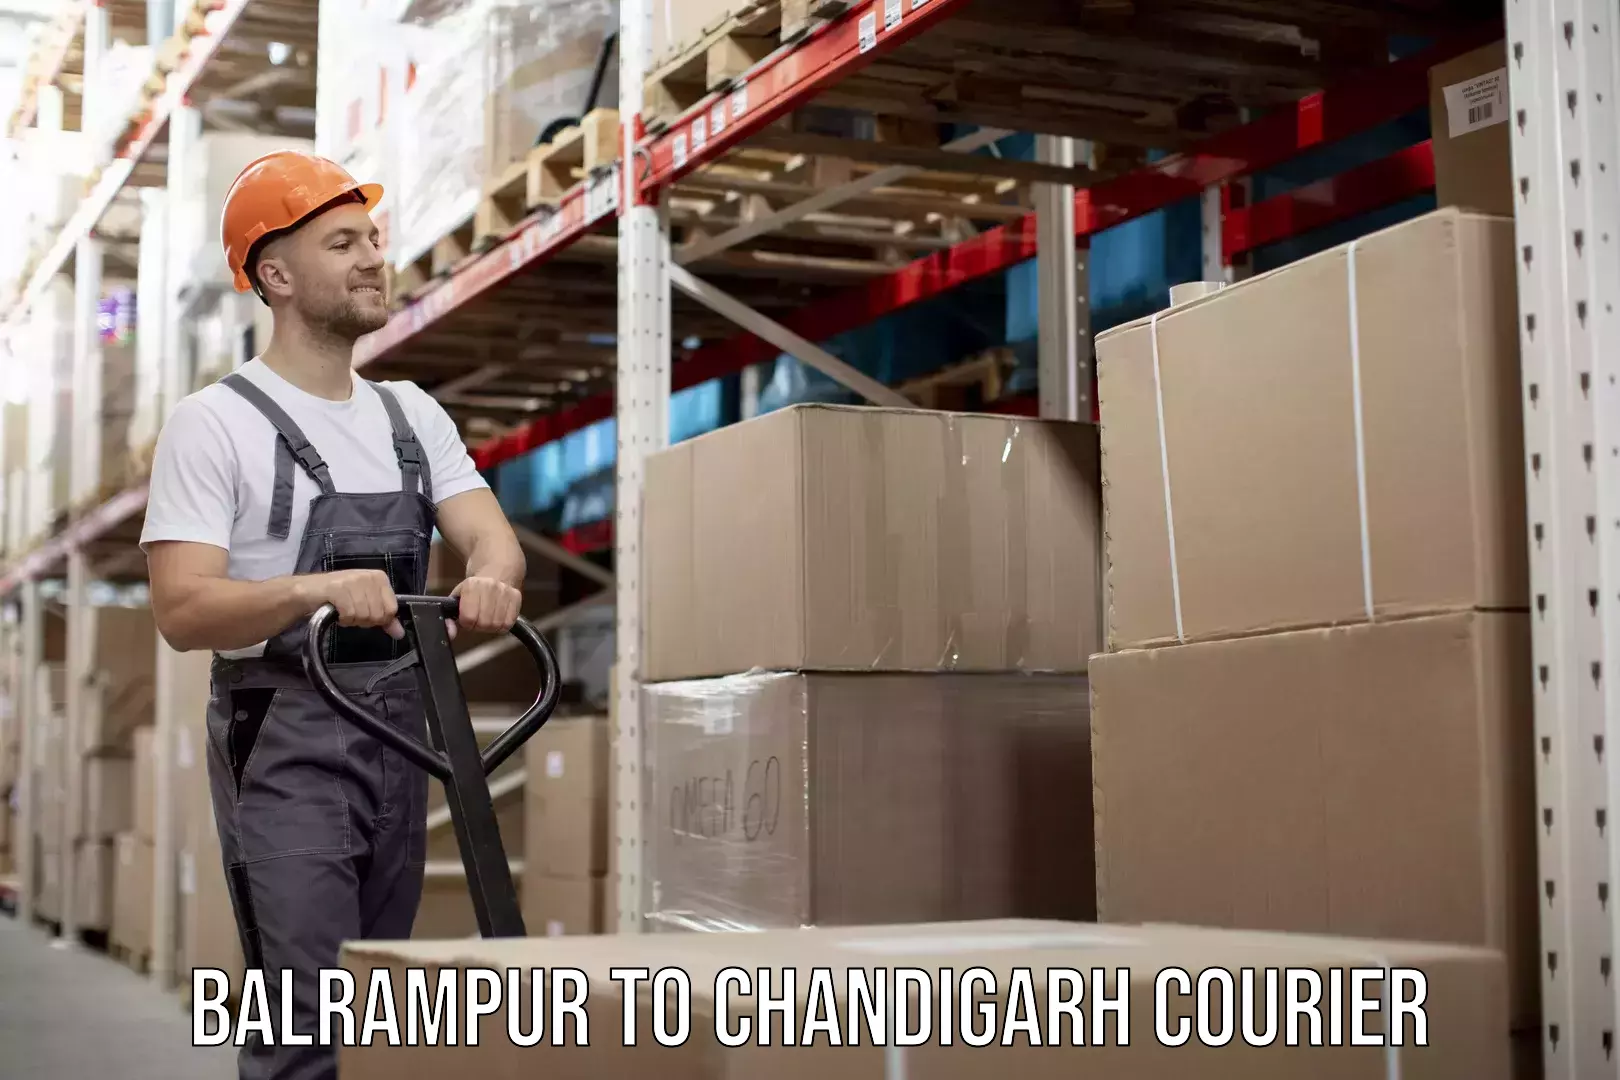 Urban courier service Balrampur to Chandigarh